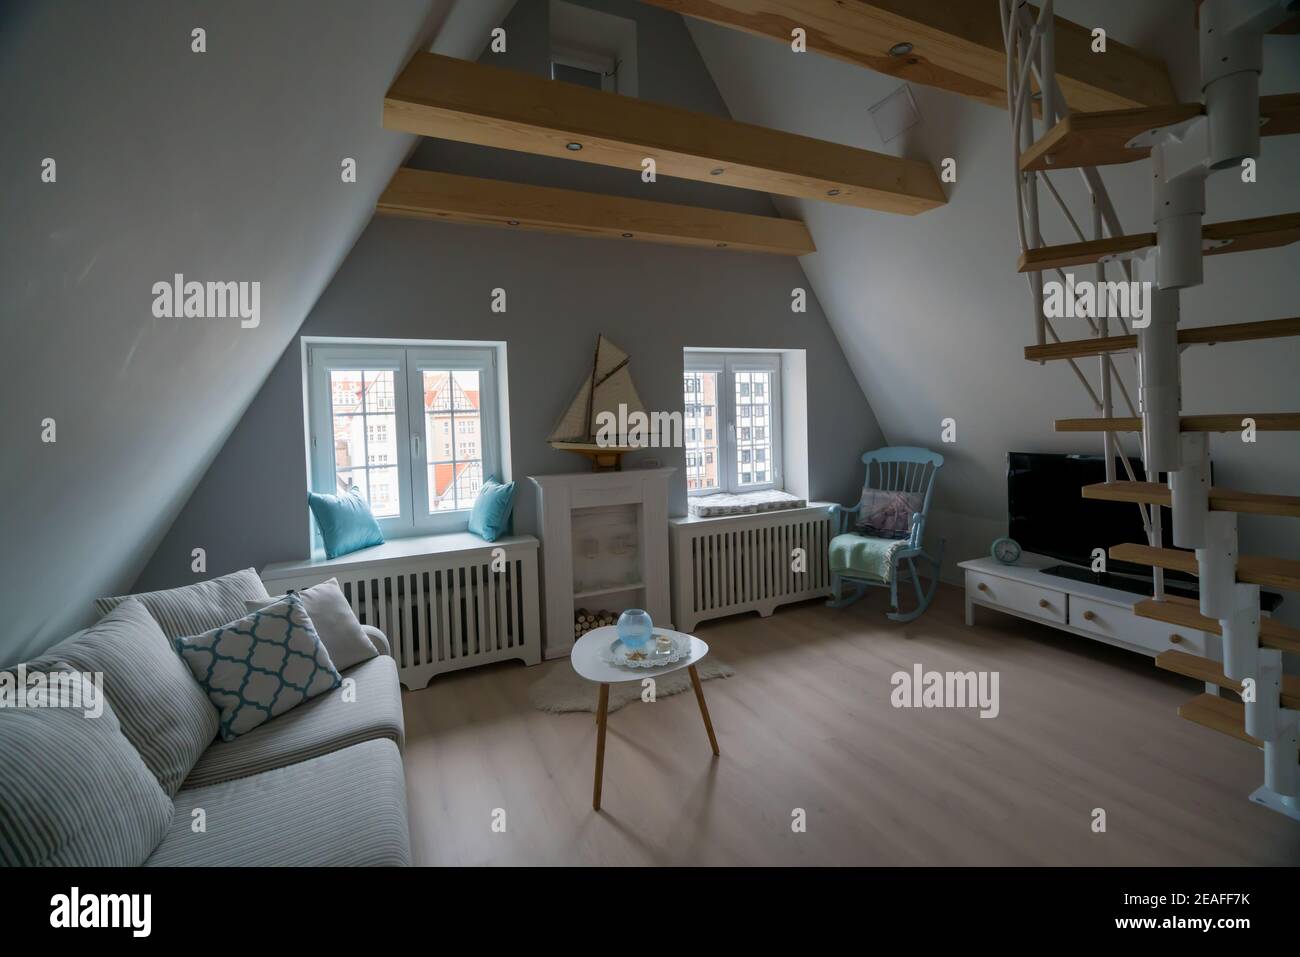 Danzig, Polen - 05,06.2017: Interieur der gemütlichen Dachwohnung im skandinavischen Stil, mit Holzmöbeln und Schaukelstuhl. Stockfoto